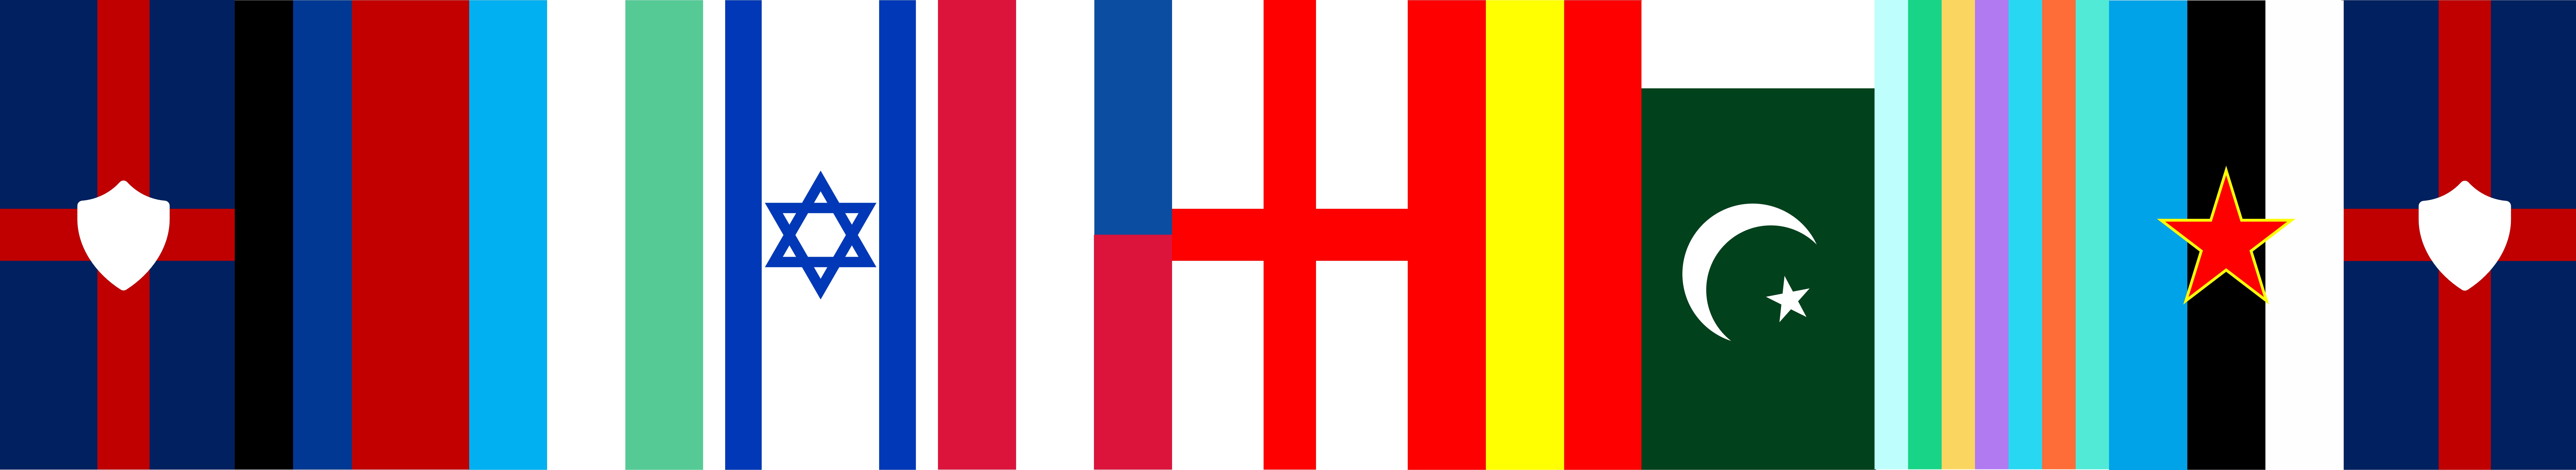 哈瓦那公約組織成員國豎旗